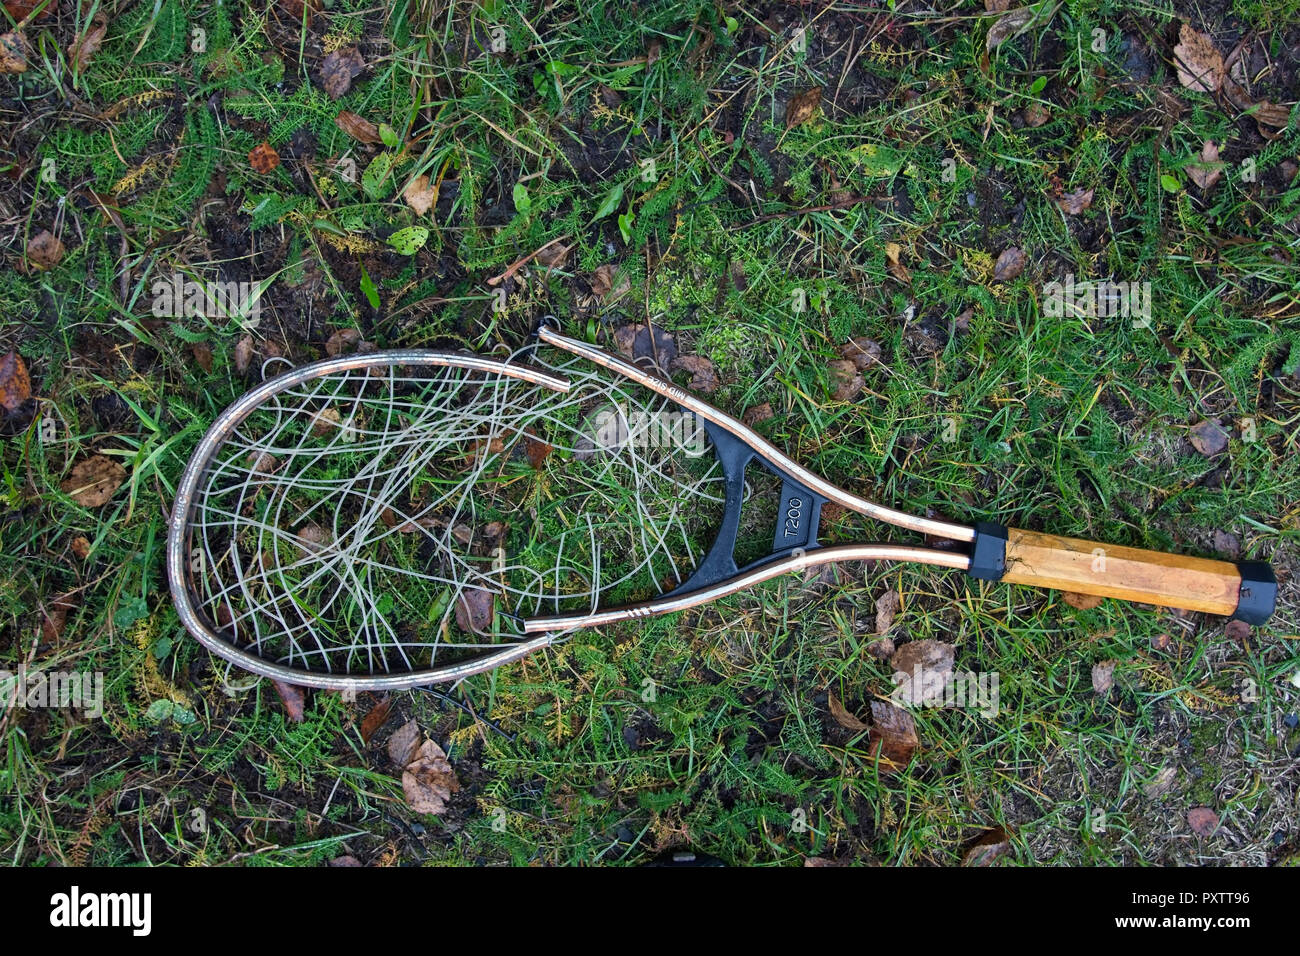 broken tennis racket Stock Photo - Alamy